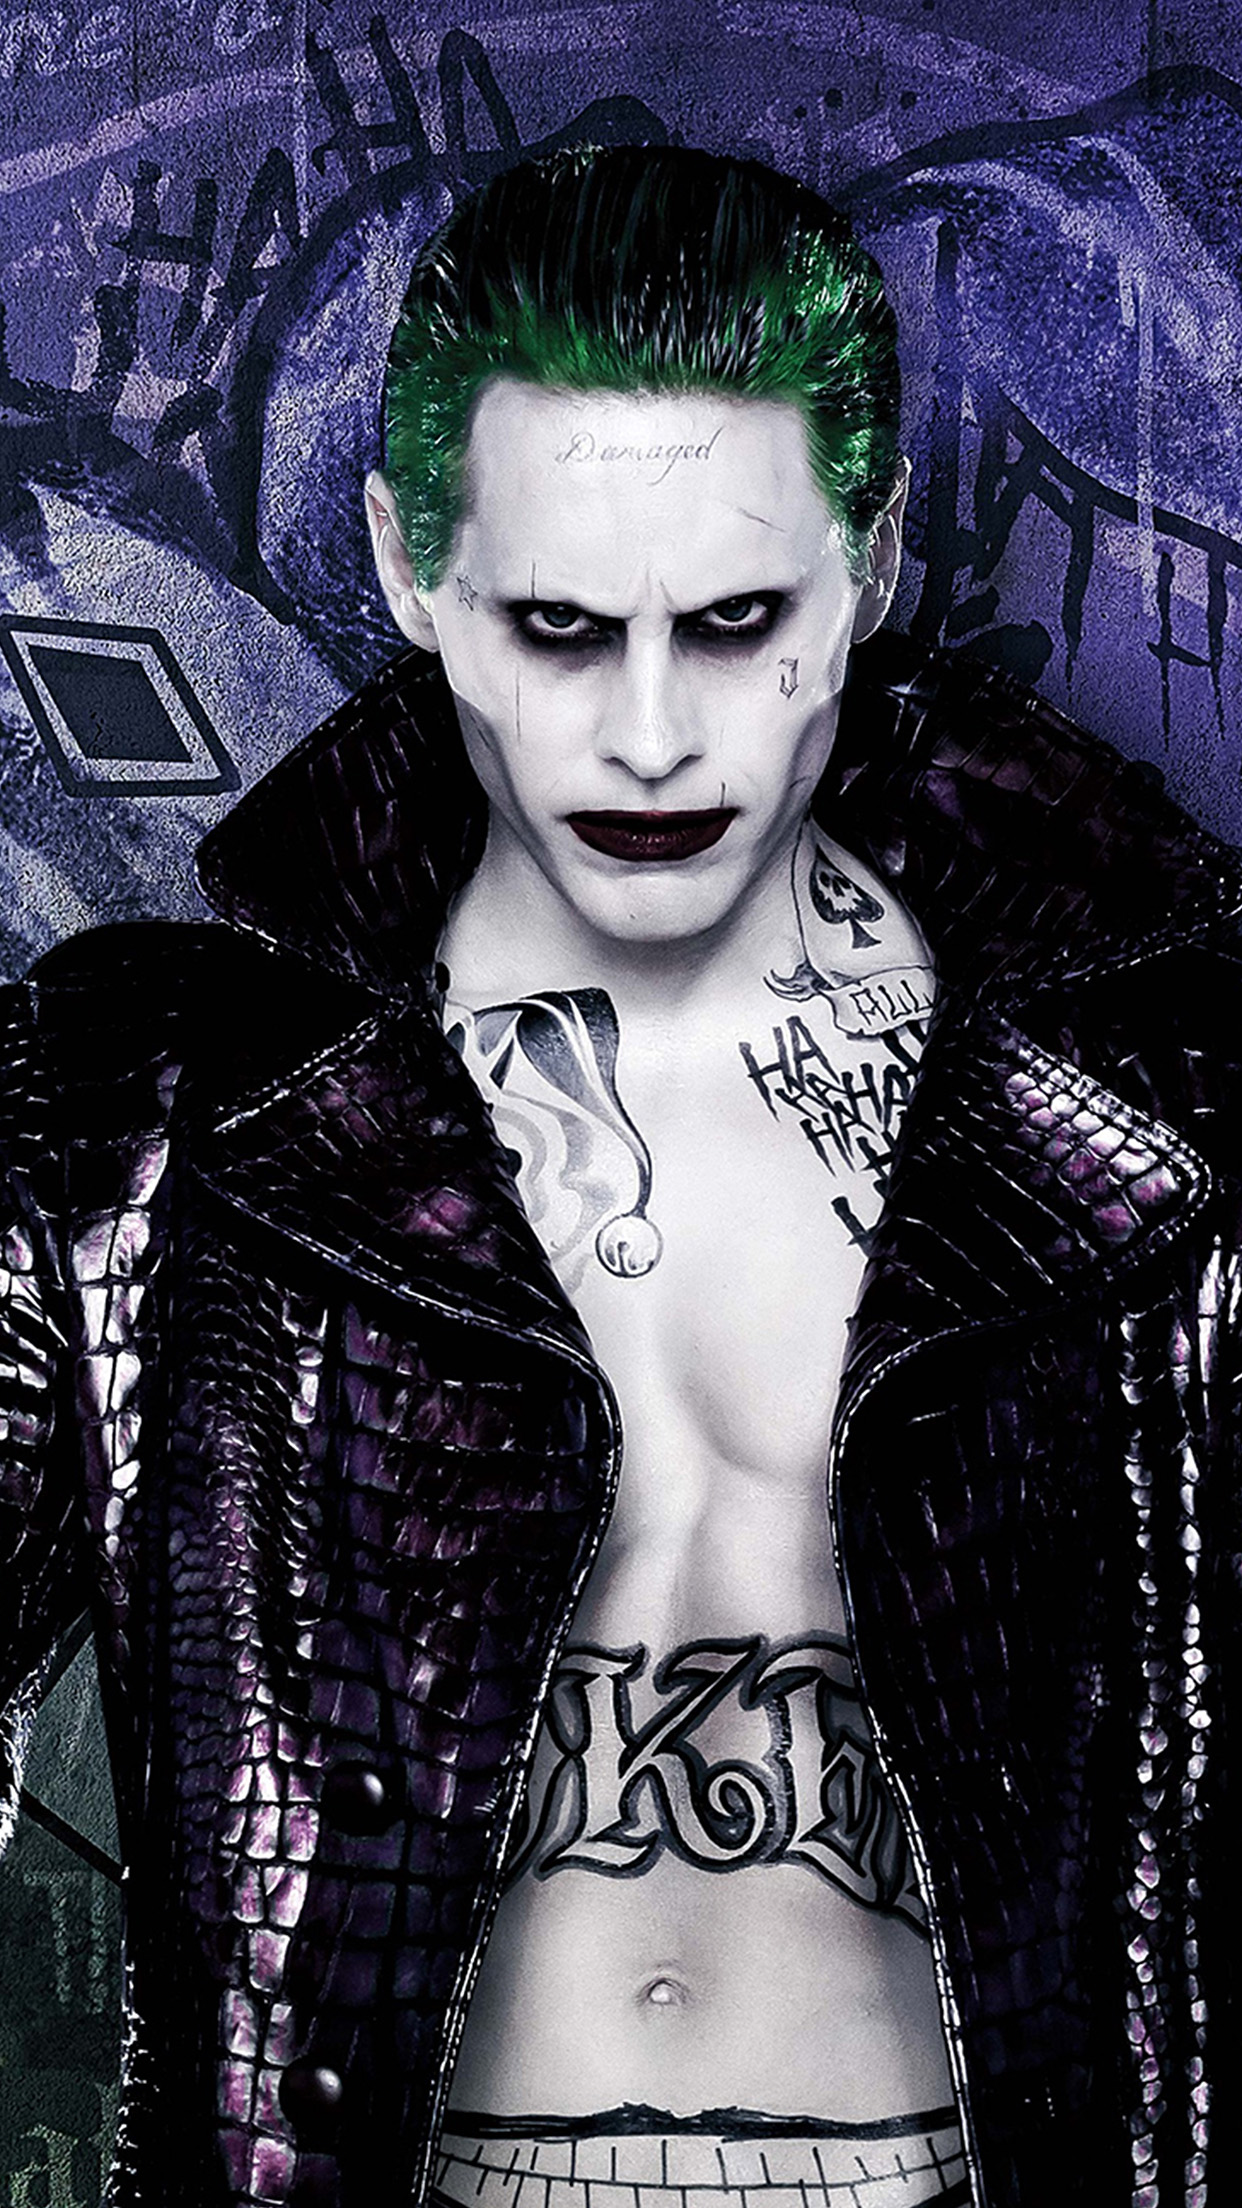 Joker Ảnh nền  Tải xuống điện thoại di động của bạn từ PHONEKY